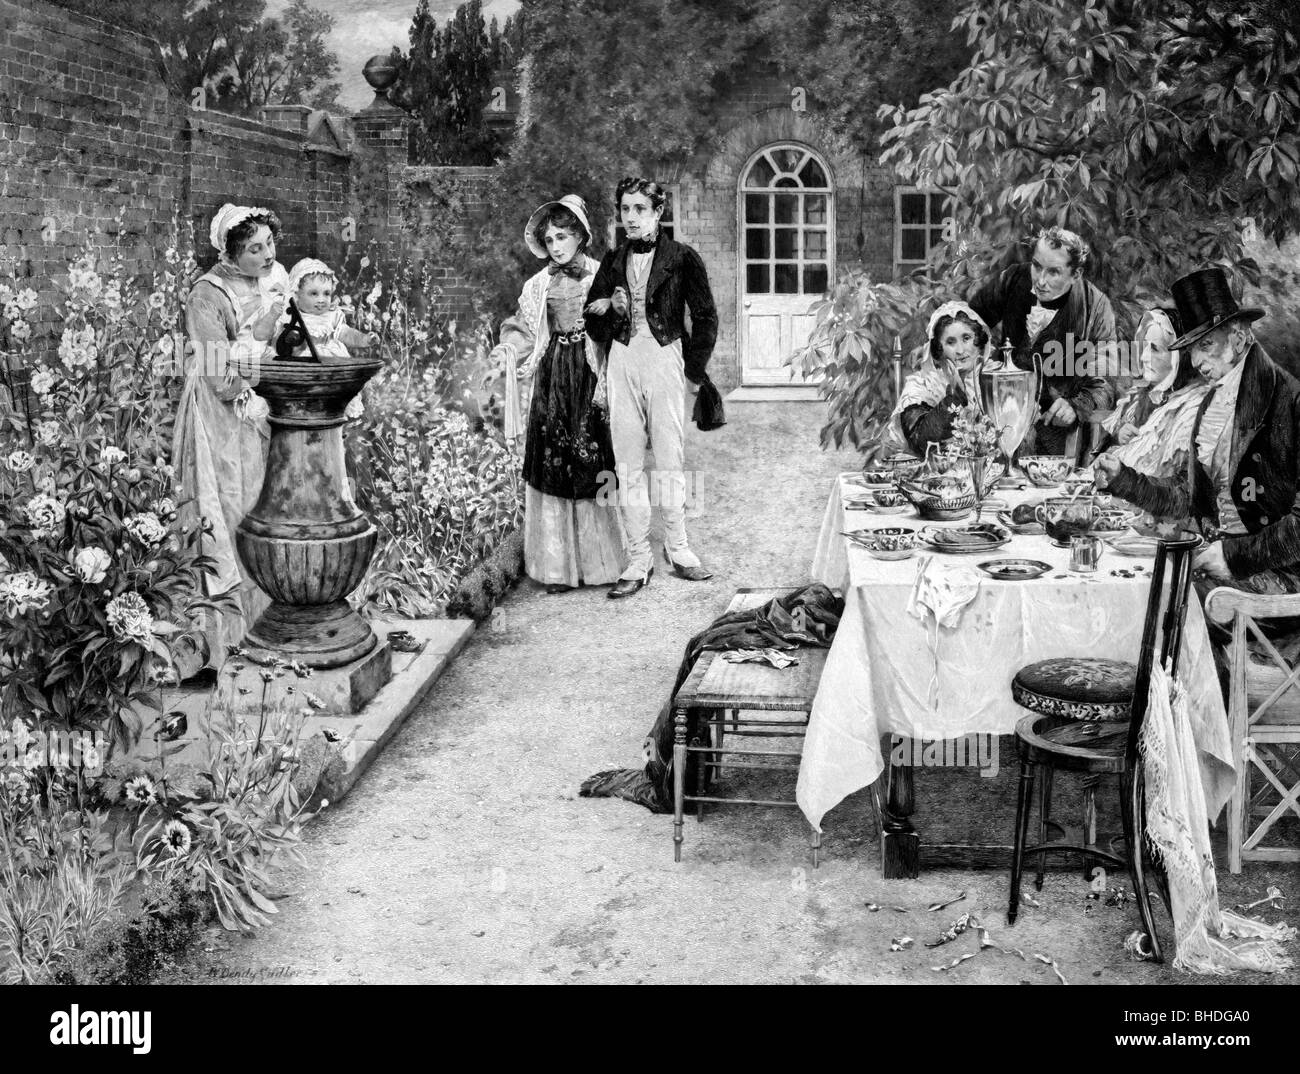 Comme les années passent - Personnes dînant dans jardin, circa 1900 Banque D'Images